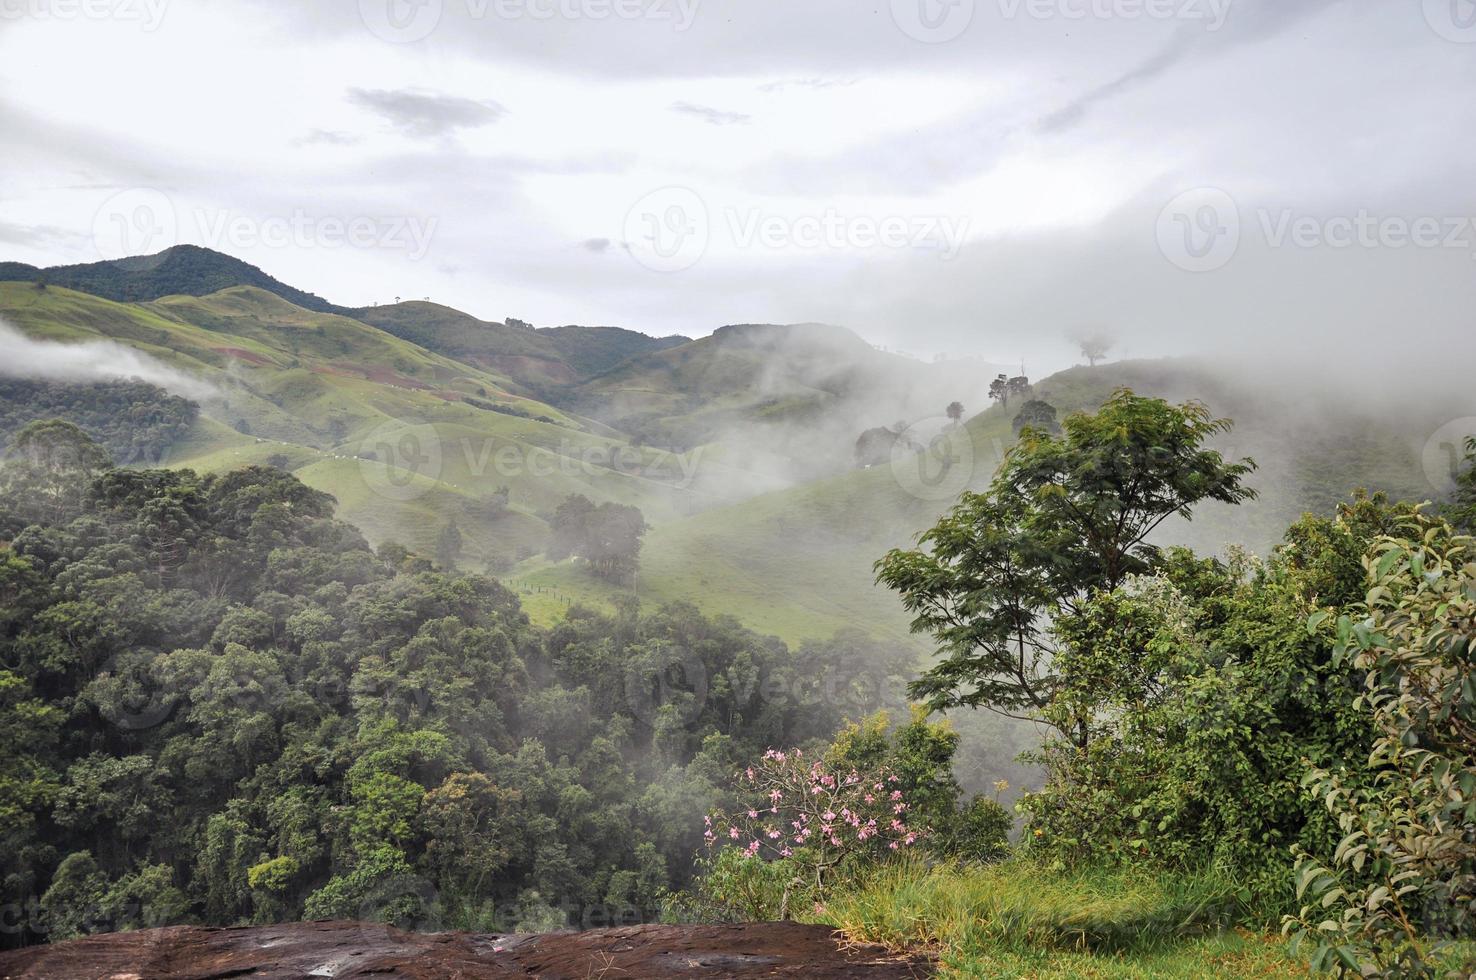 aperçu de la forêt et des collines enveloppées de brume et de nuages près de la ville de joanopolis. dans la campagne de l'état de sao paulo, une région riche en produits agricoles et d'élevage, au brésil. photo